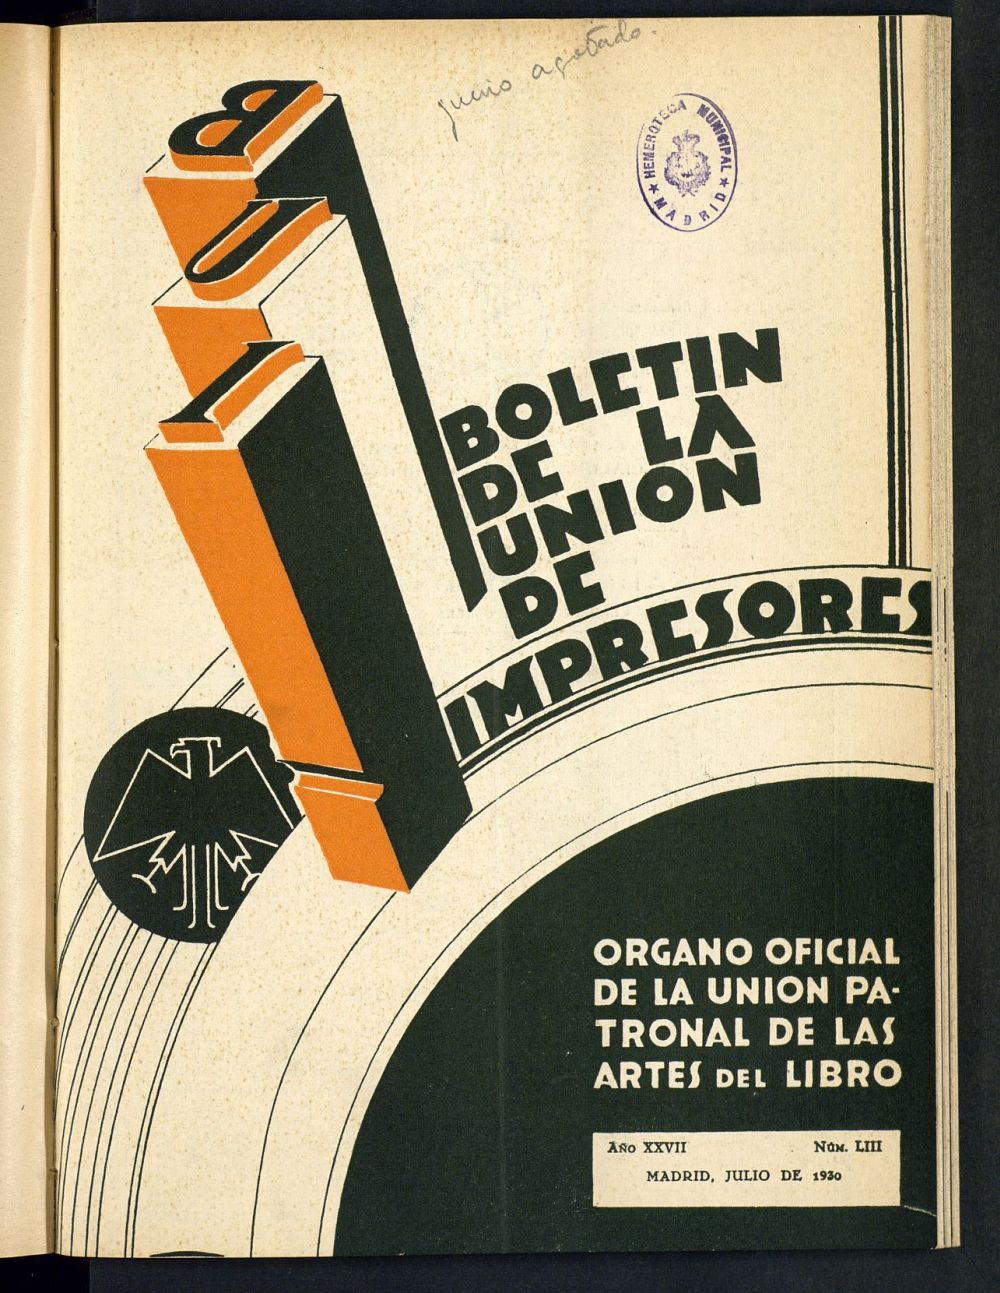 Boletn de la unin de impresores : rgano de la unin patronal de las artes del libro de julio de 1930